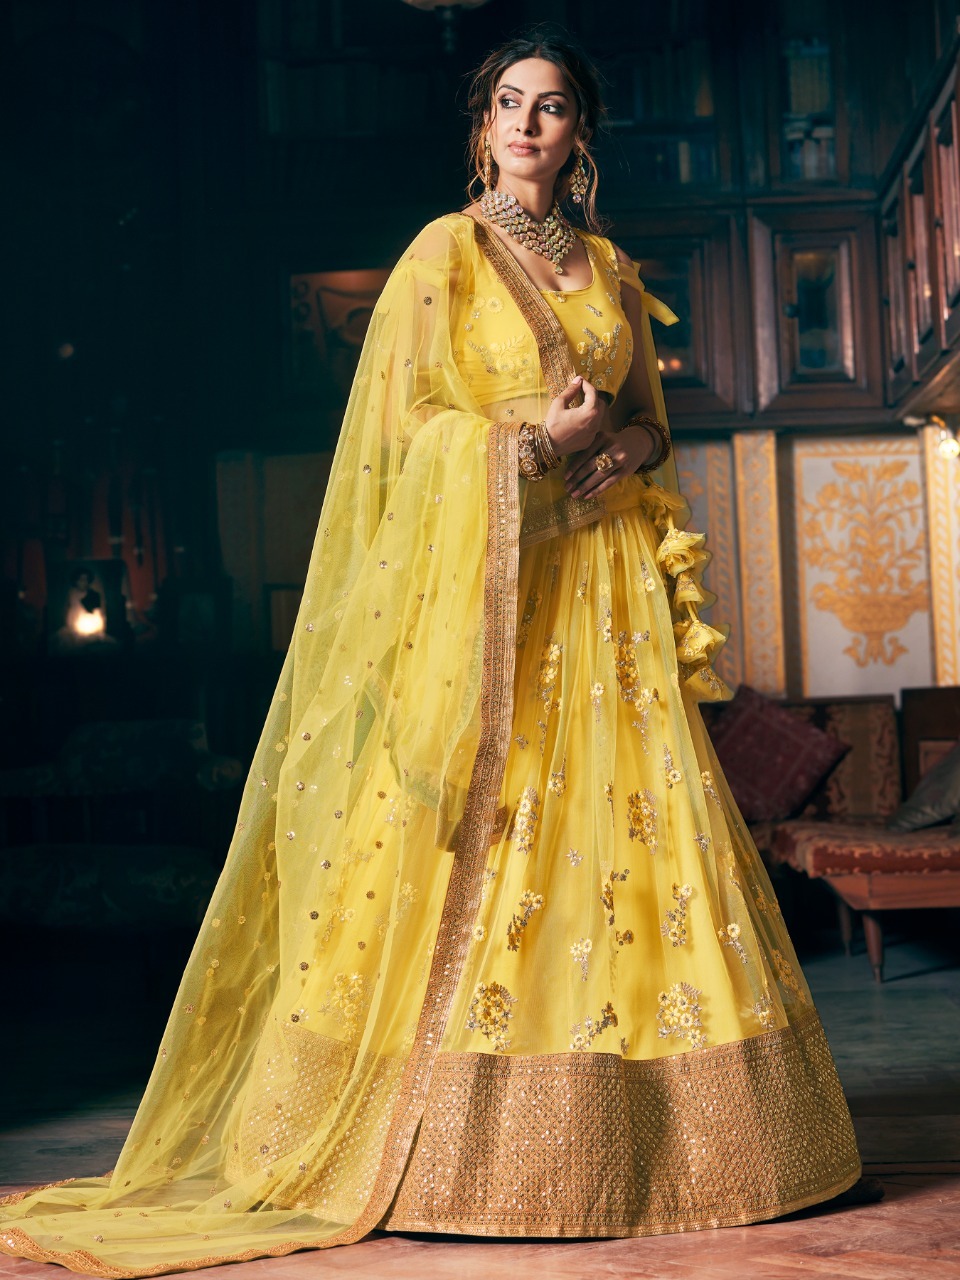 Buy Sabyasachi Lehenga Indian Party Bollywood Designer Wedding Online in  India - Etsy | Sabyasachi lehenga, Indian lehenga, Mehendi outfits